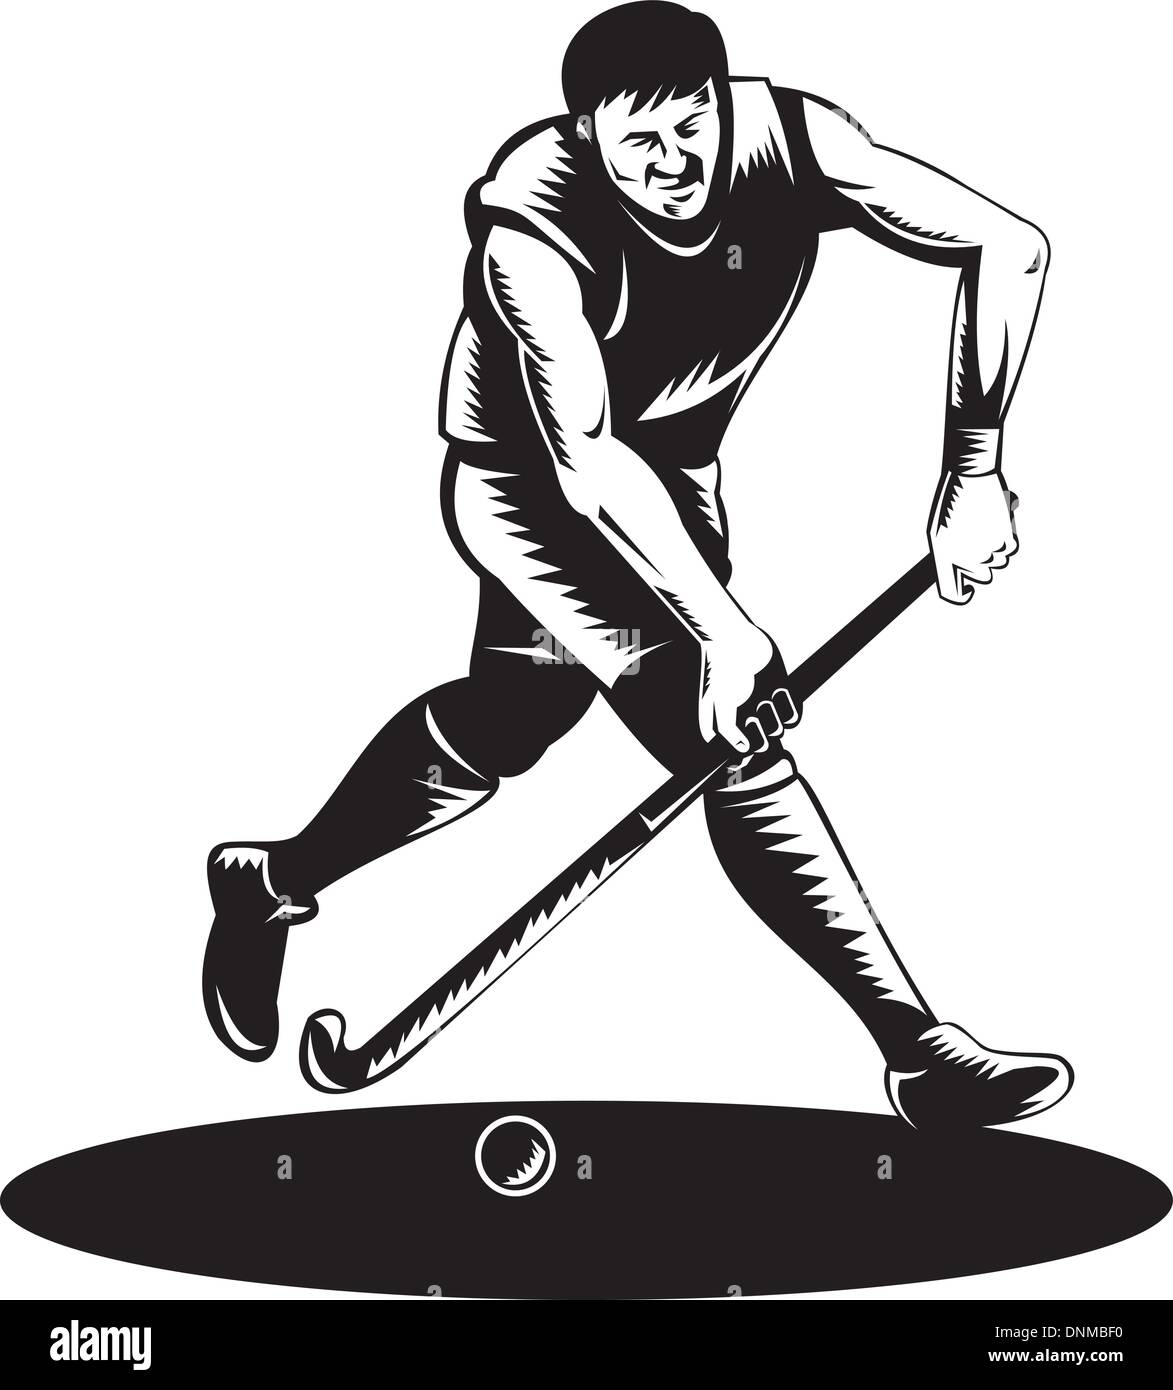 Illustrazione di un giocatore di hockey in esecuzione con bastone colpire la sfera fatto rétro xilografia stile. Illustrazione Vettoriale